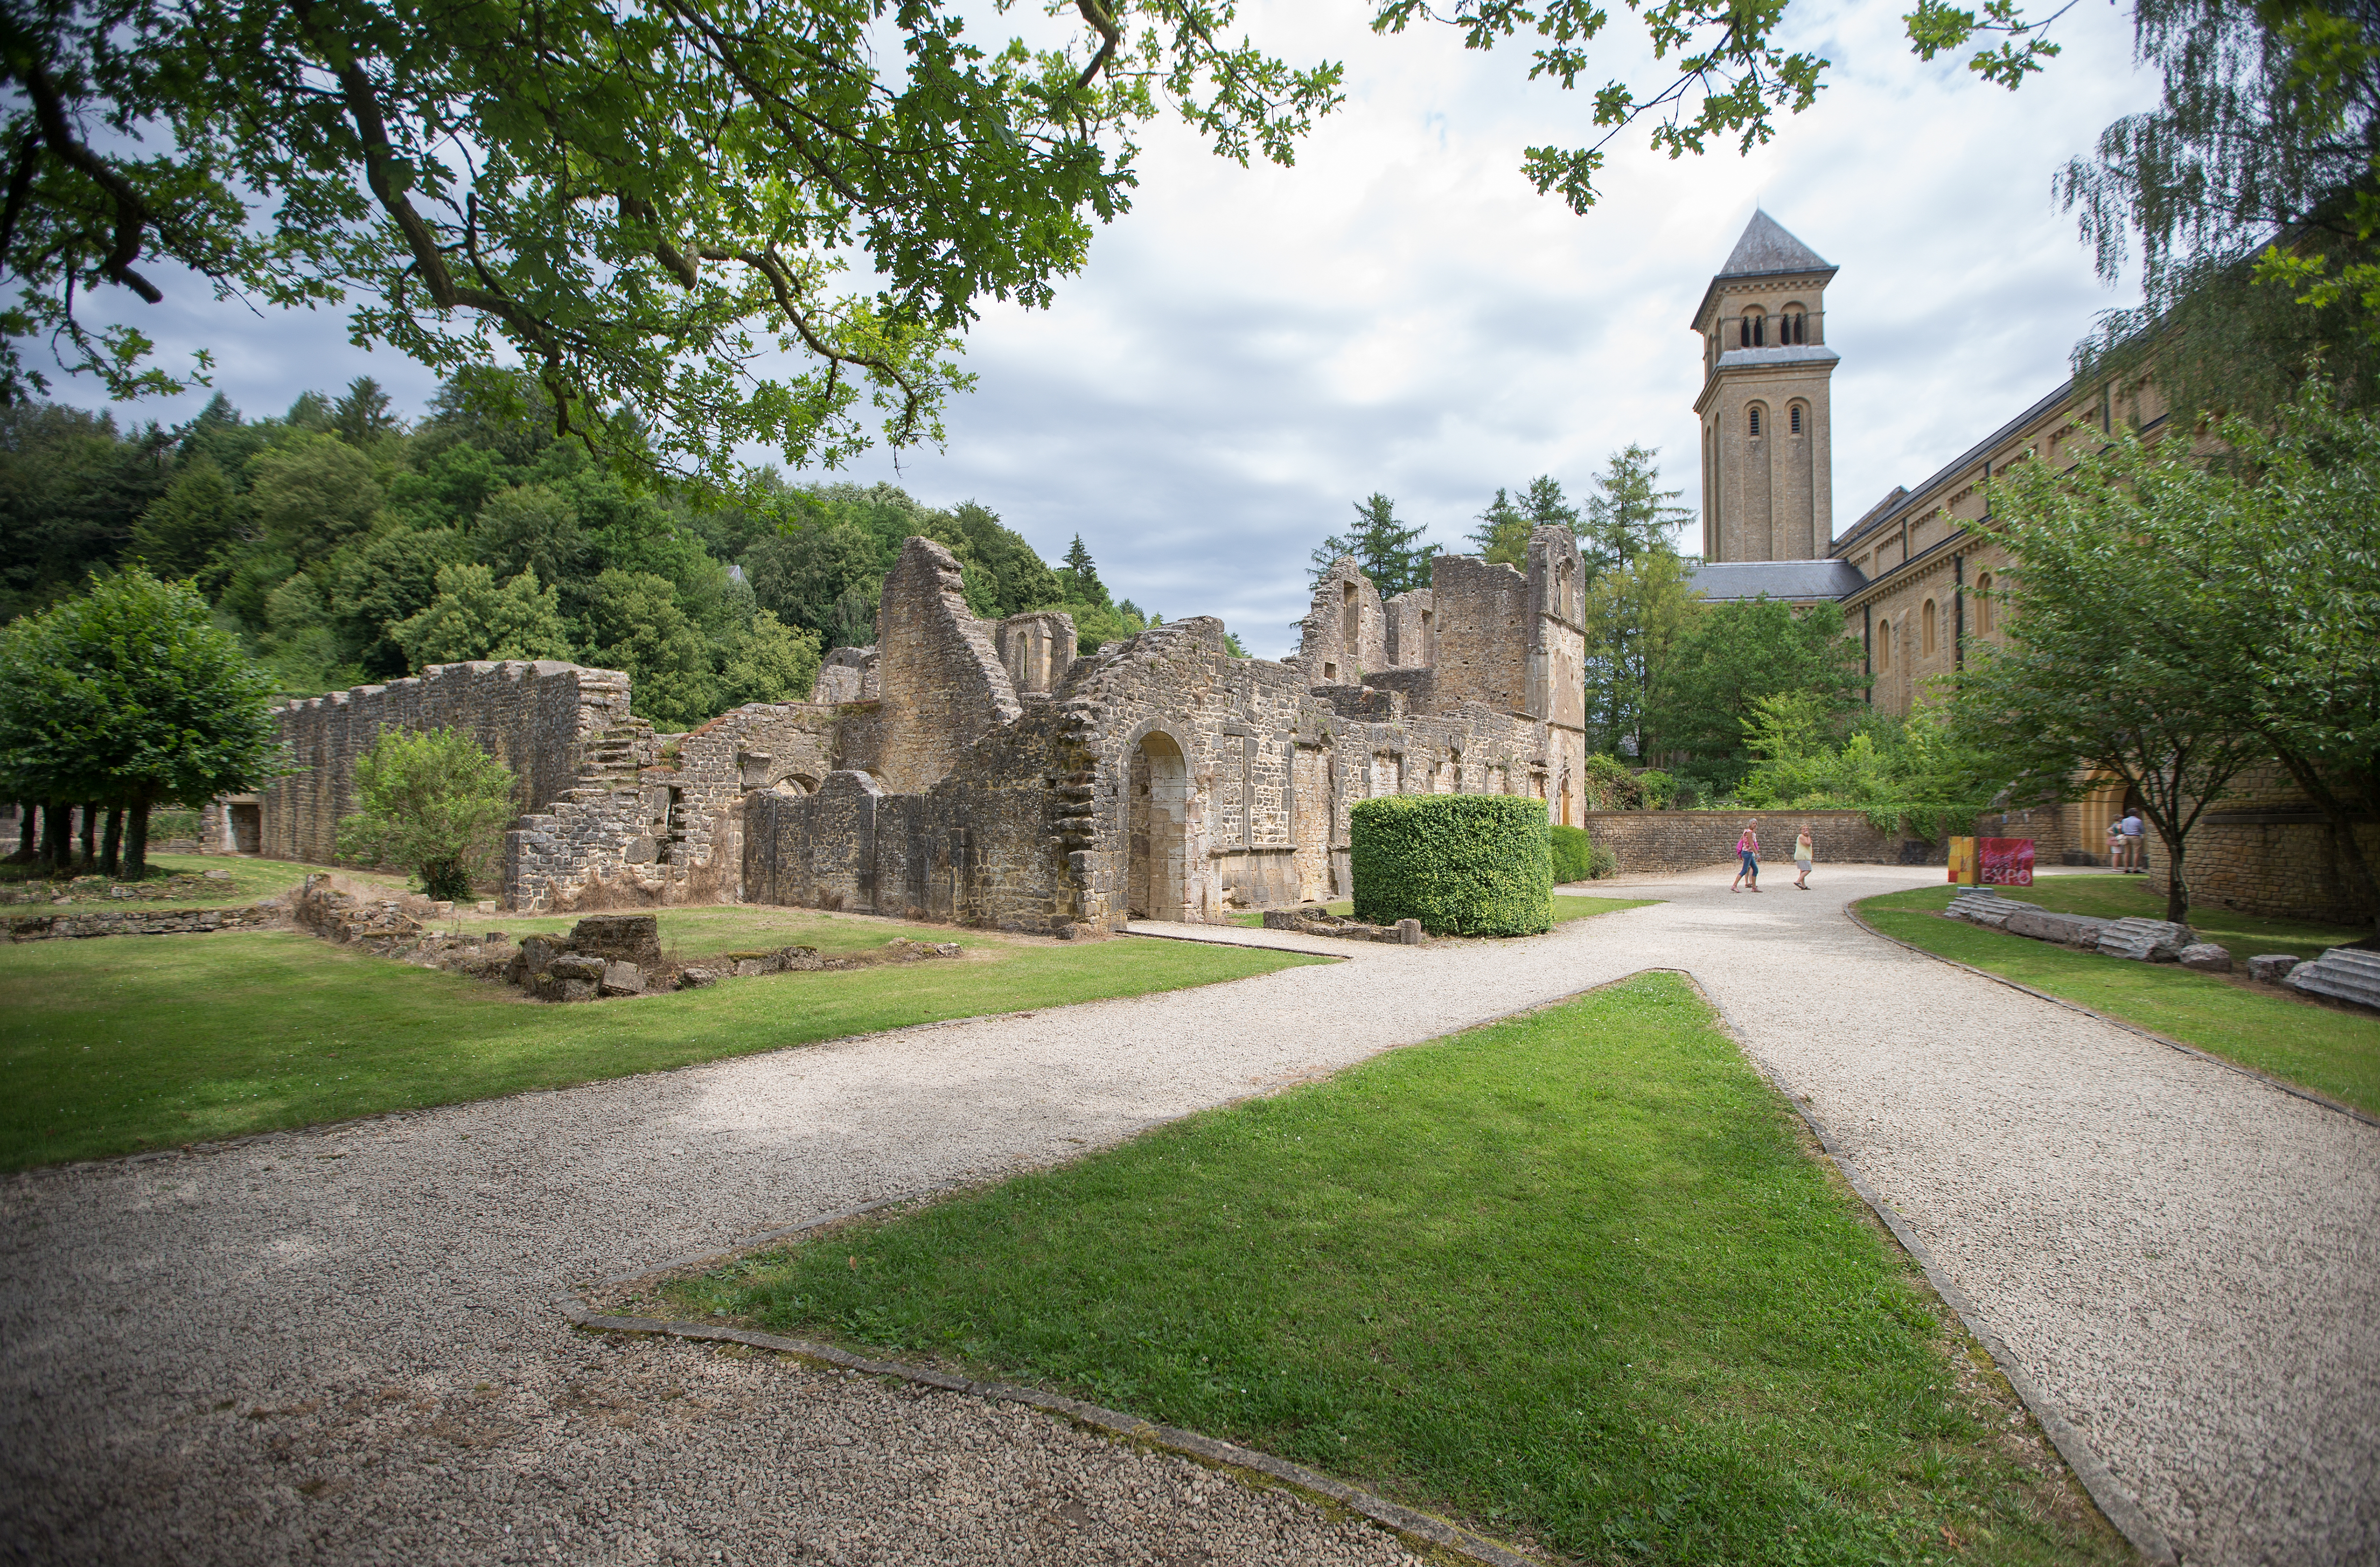 Venez découvrir la célèbre abbaye Notre-Dame d'Orval à Florenville